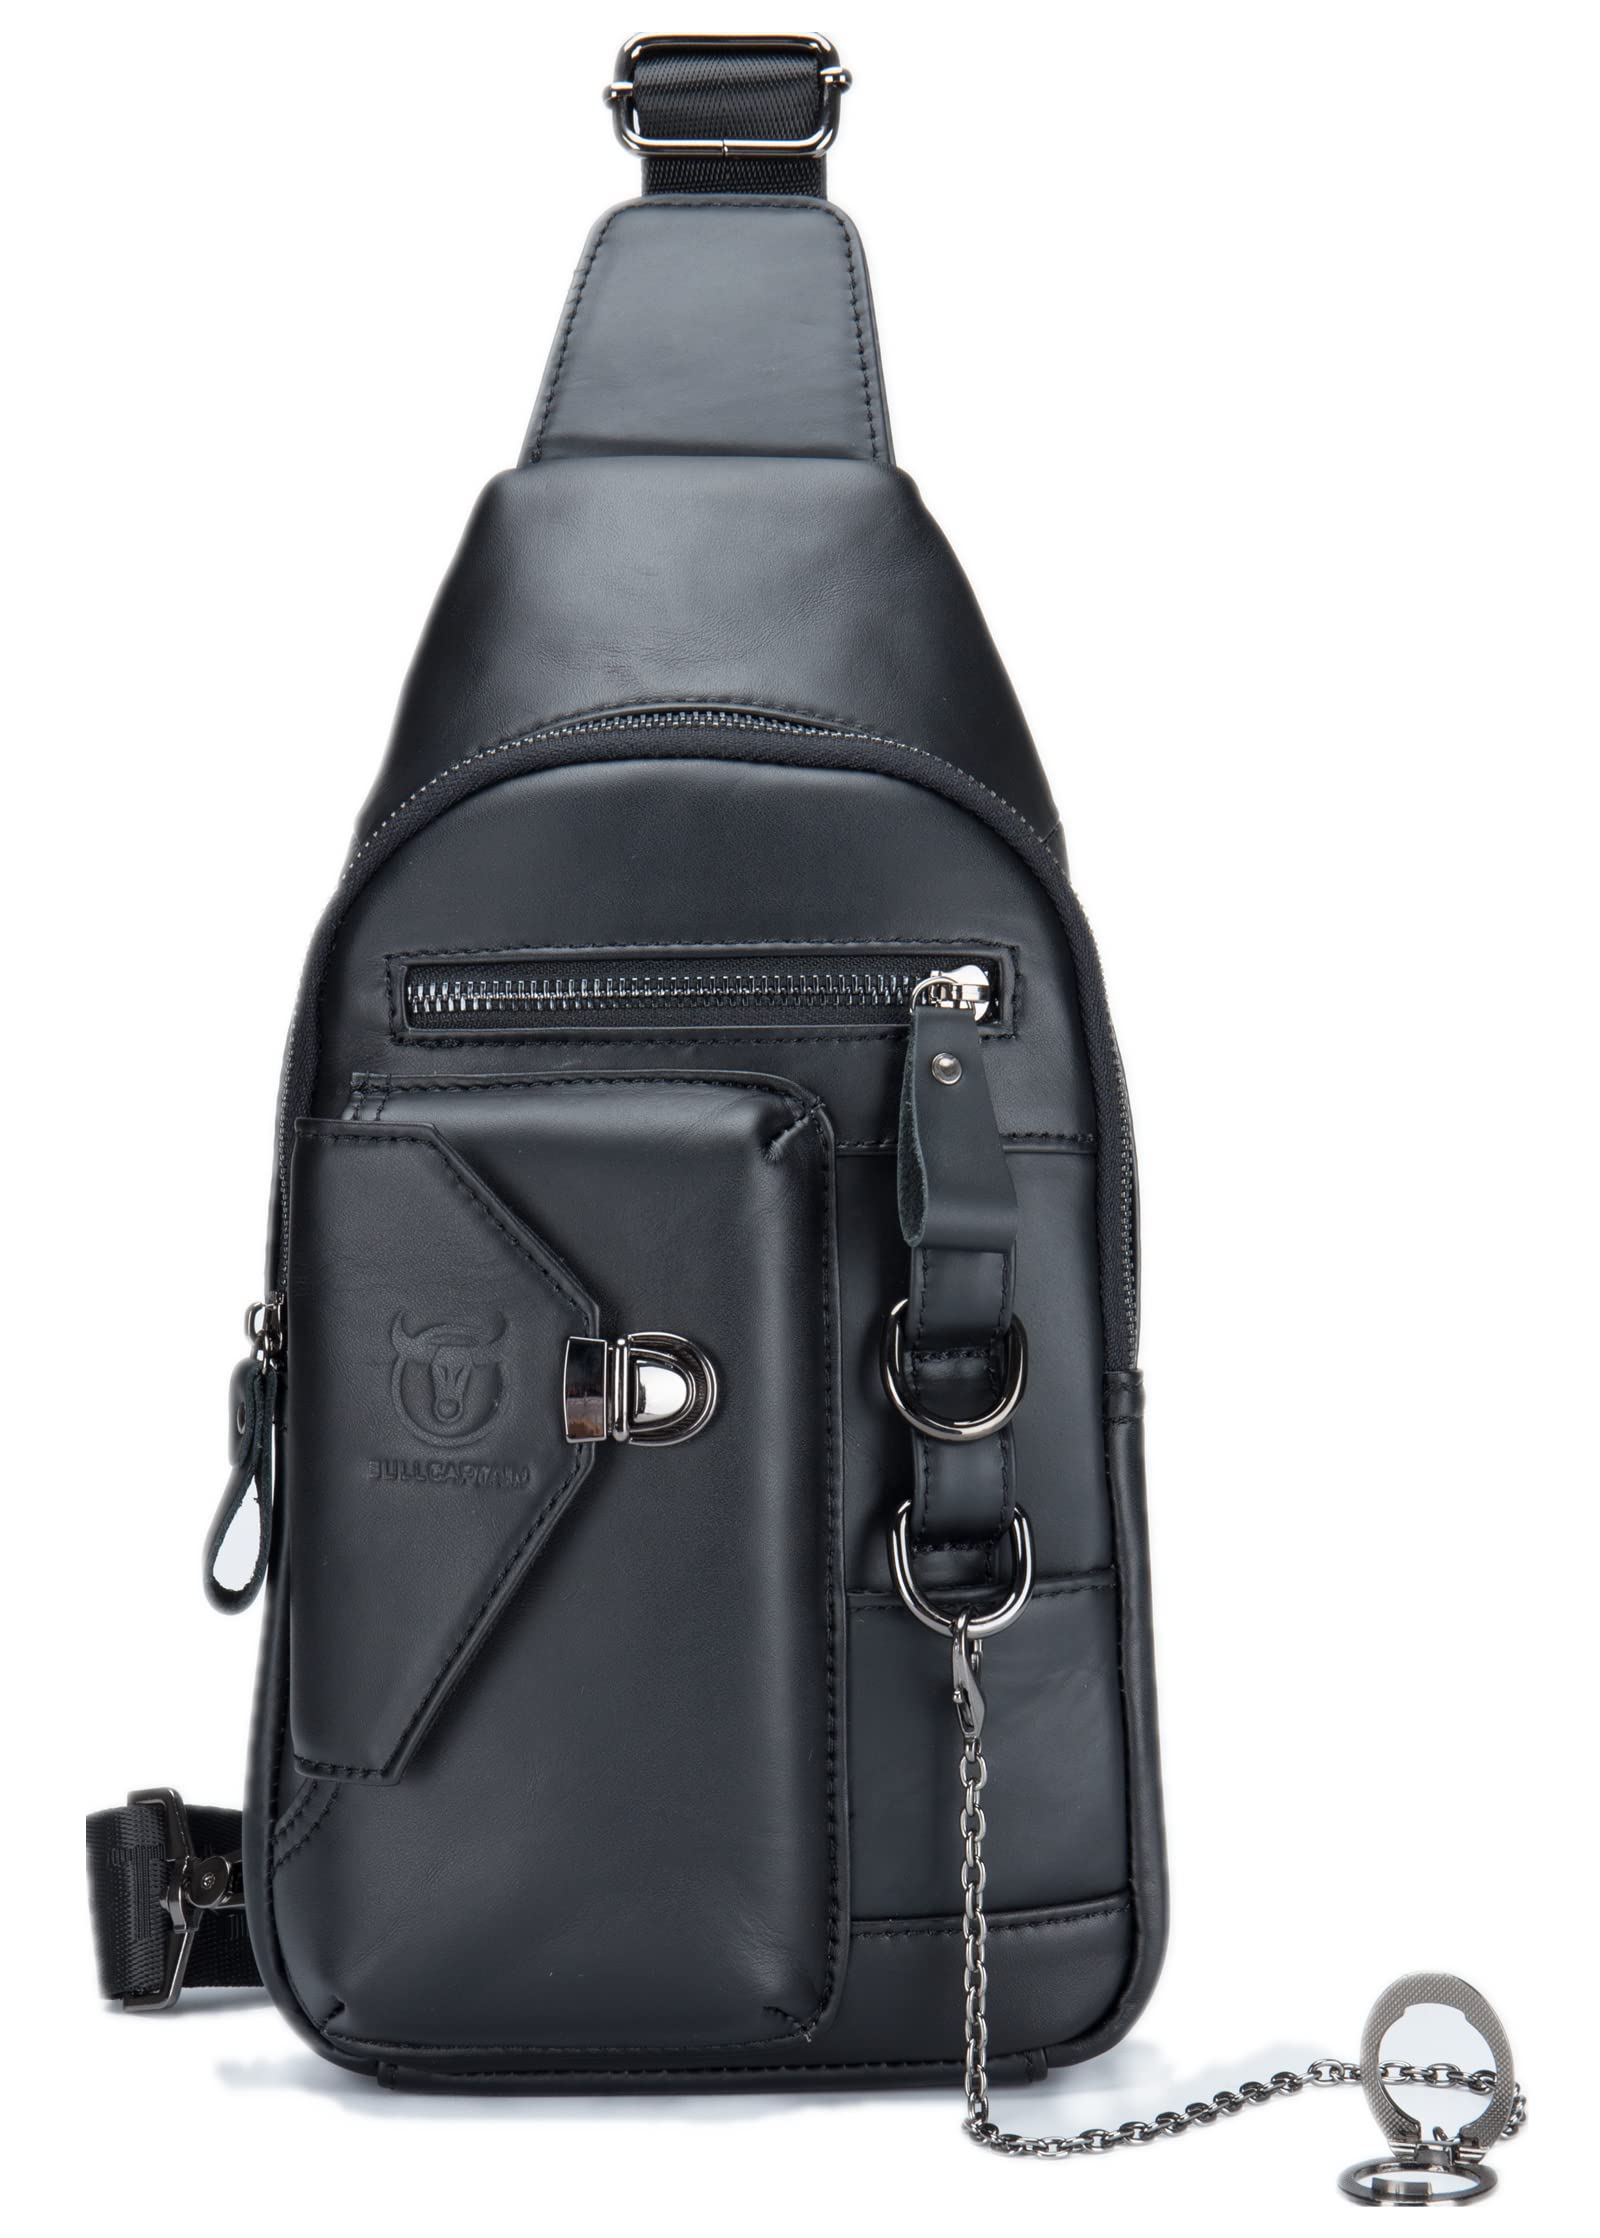 送料無料BULLCAPTAIN Genuine Leather Sling Bag for Men Crossbody with Cellphone Stand Chain Chest Shoulder Backpack Daypac